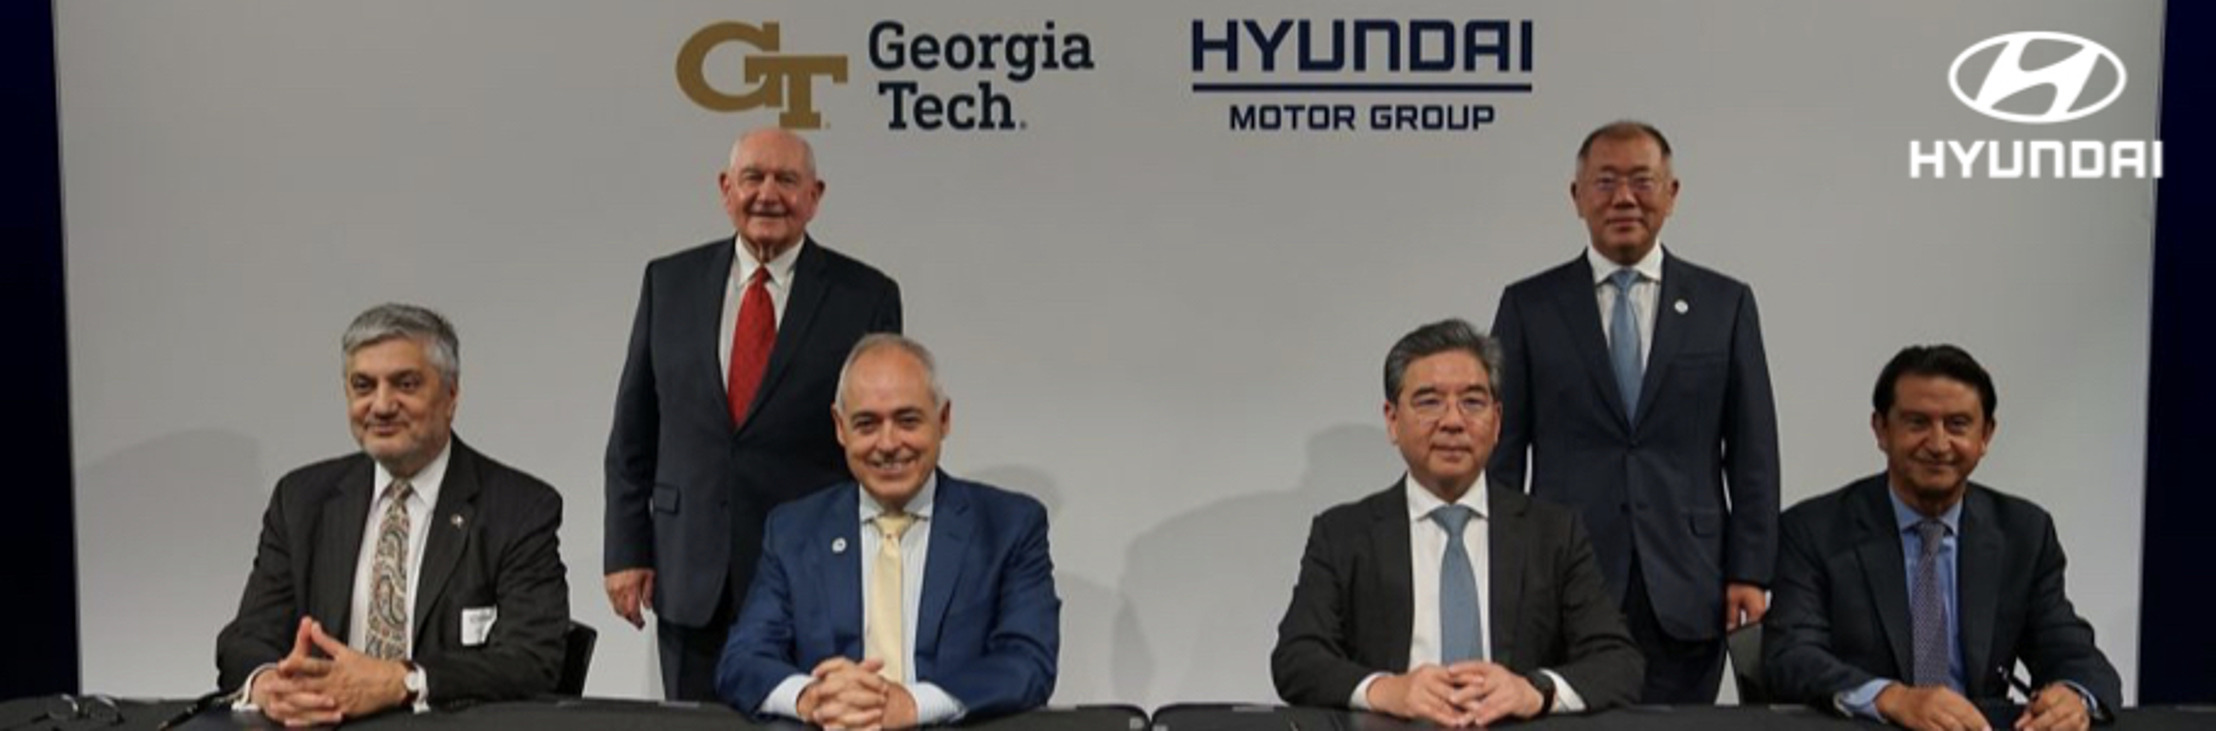 Georgia Tech y Hyundai Motor Group firman un memorando de entendimiento que impulsará la movilidad futura